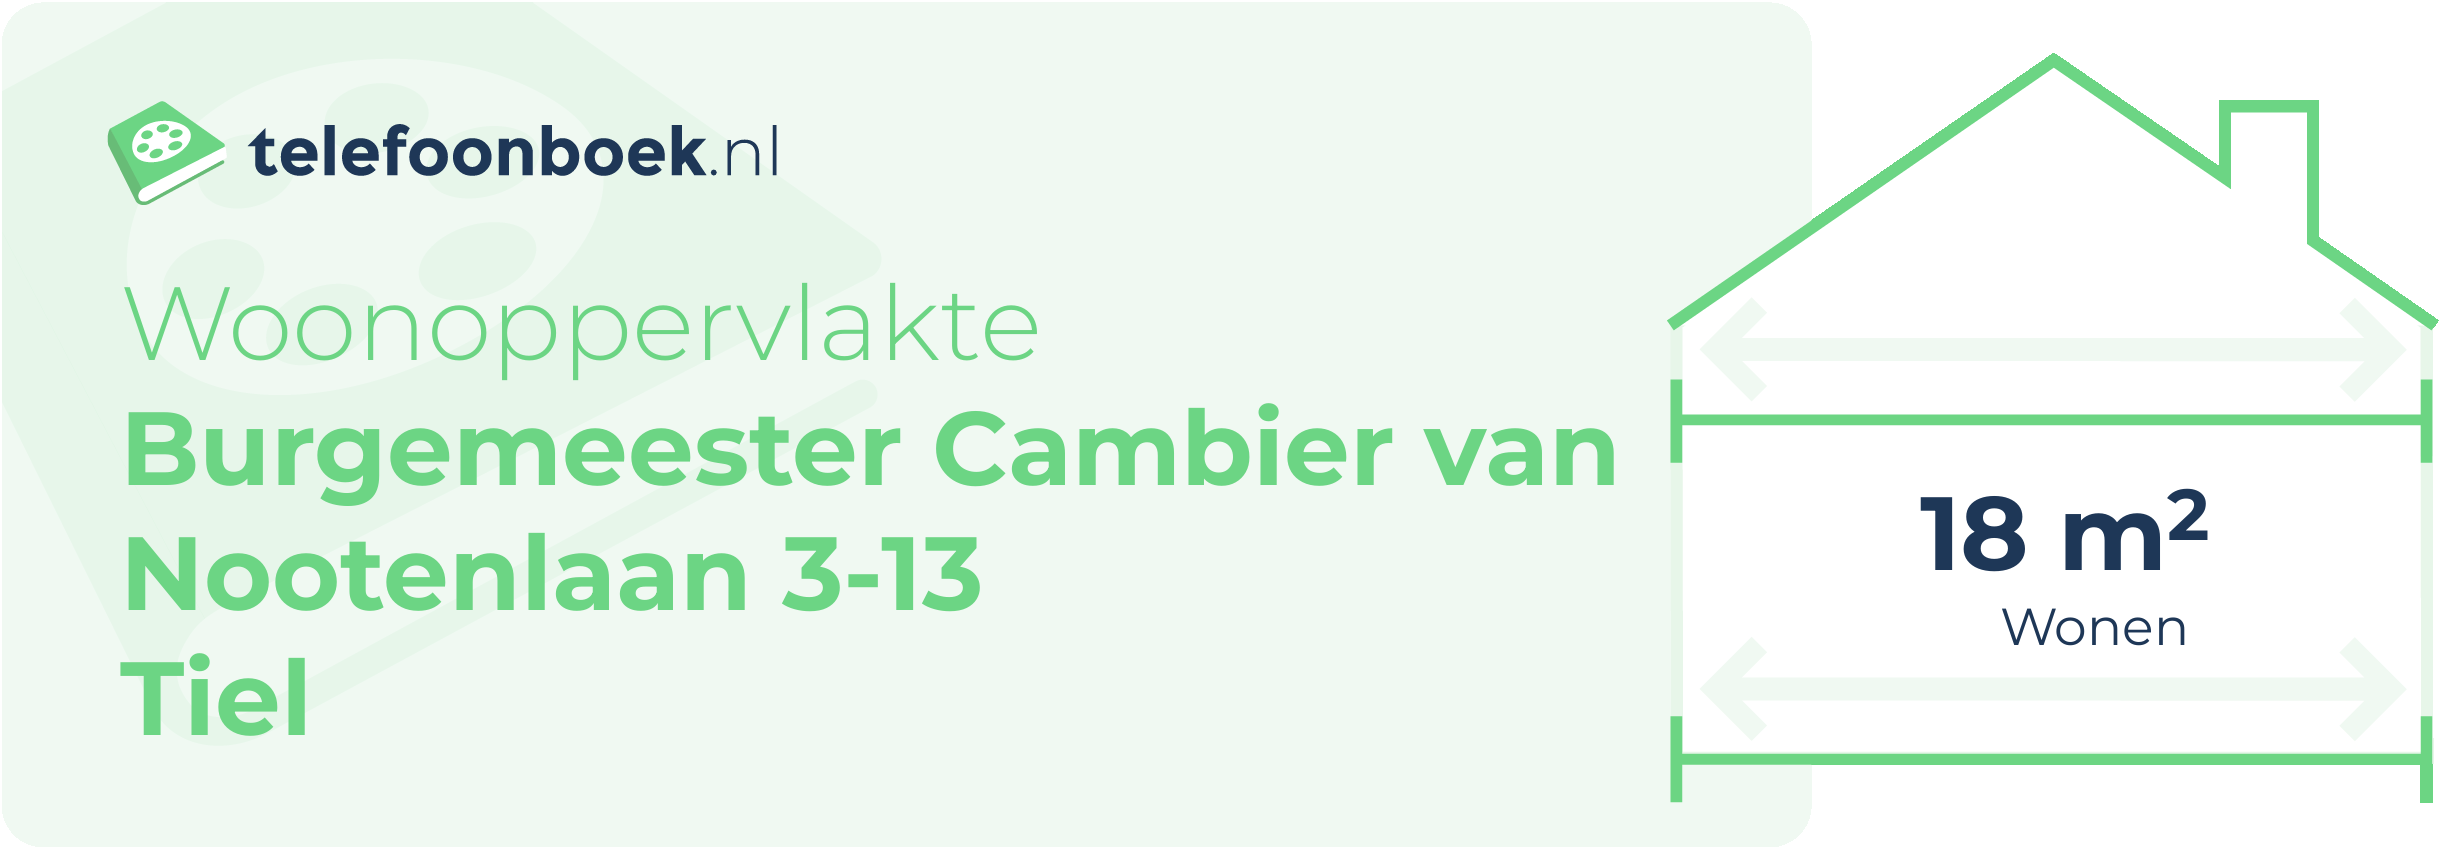 Woonoppervlakte Burgemeester Cambier Van Nootenlaan 3-13 Tiel